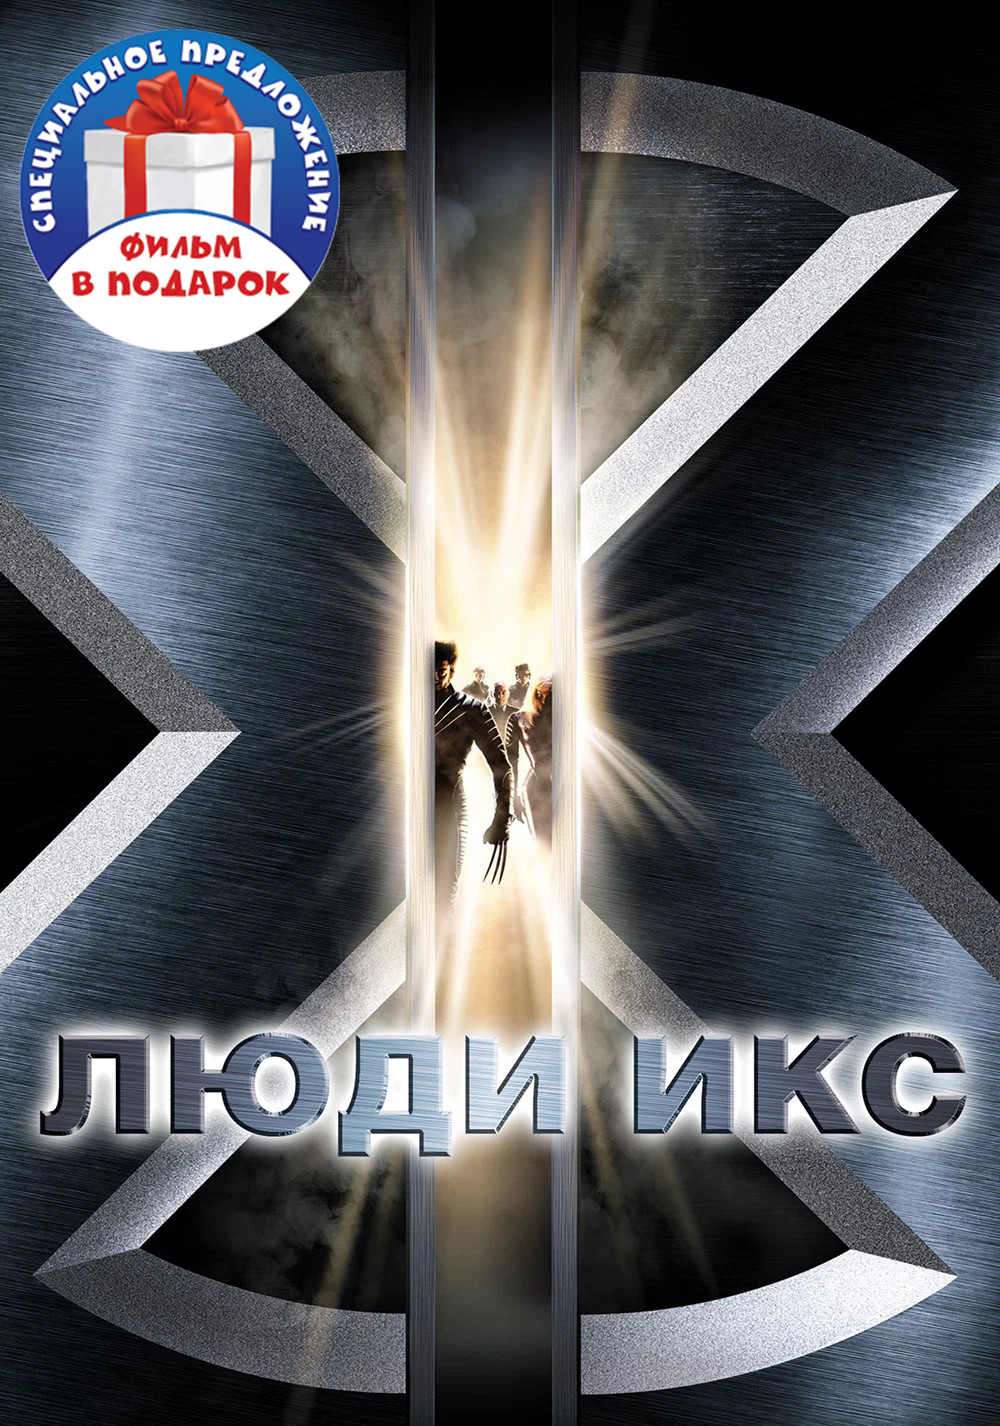 Люди Икс. Первая трилогия (3 DVD)